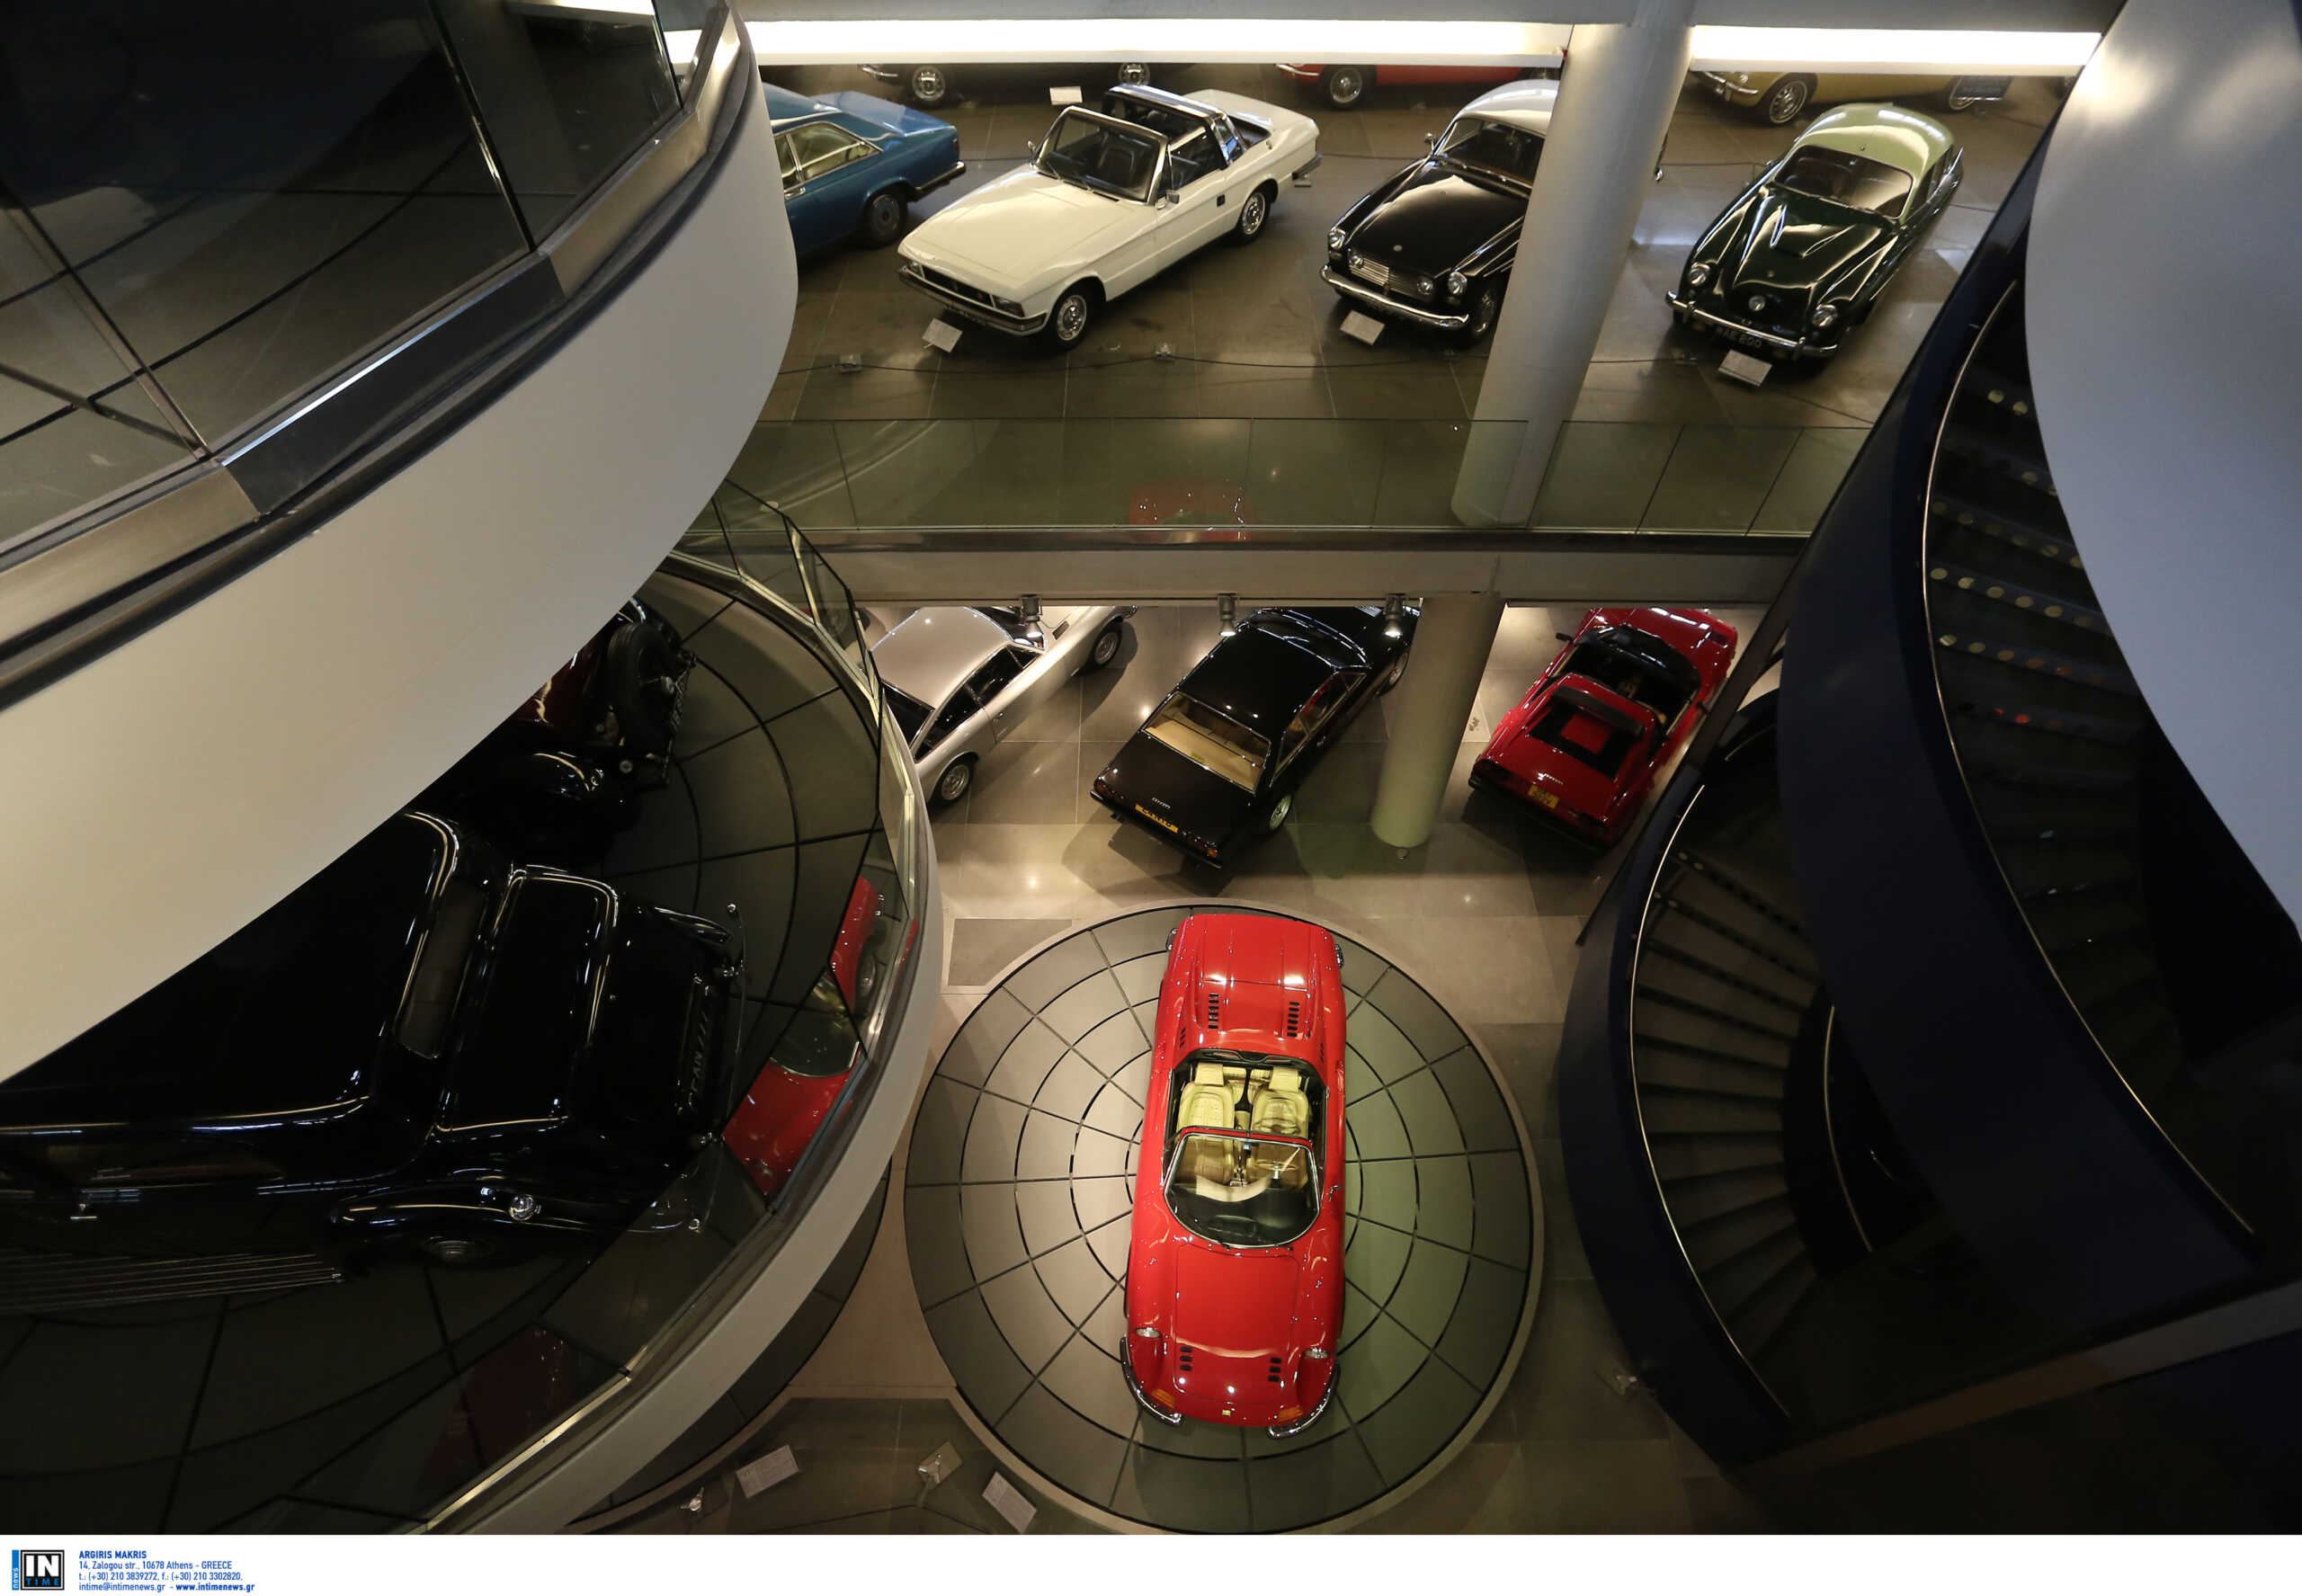 ΕΛΣΤΑΤ: Αύξηση 12,8% του τζίρου των επιχειρήσεων λιανικού εμπορίου τον Οκτώβριο – Πρωτιά για αυτοκίνητα, ελαφρά οχήματα